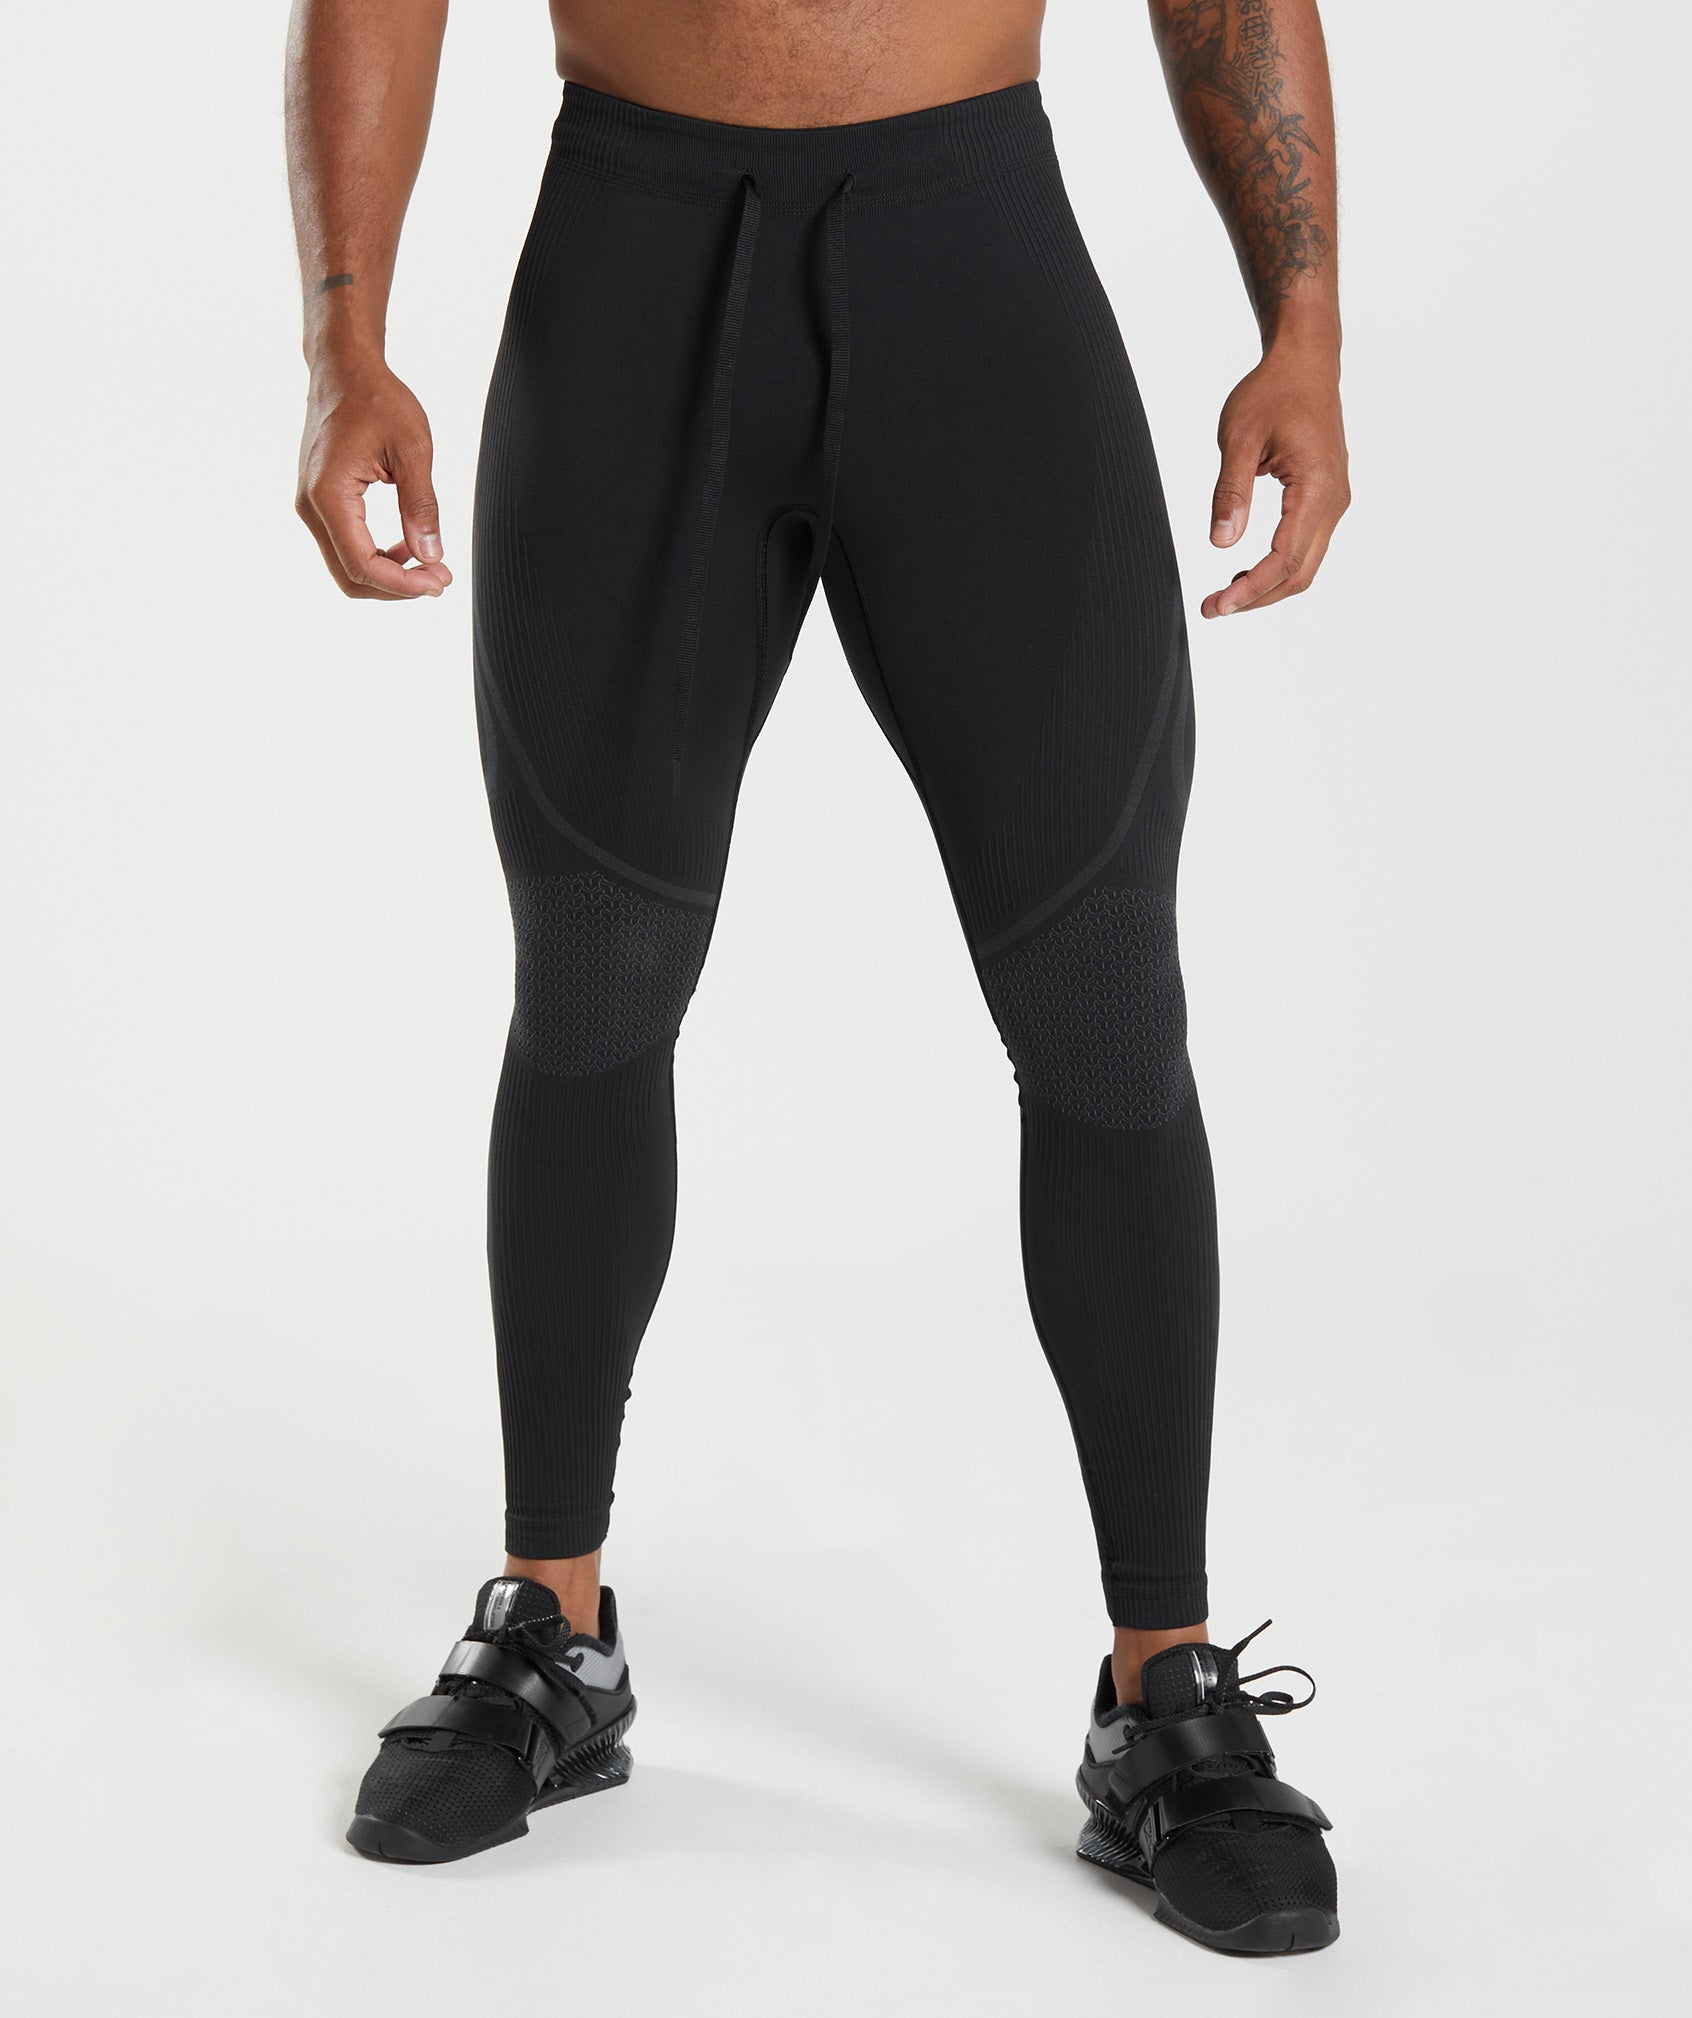 Men's Running Leggings & Tights - Gymshark